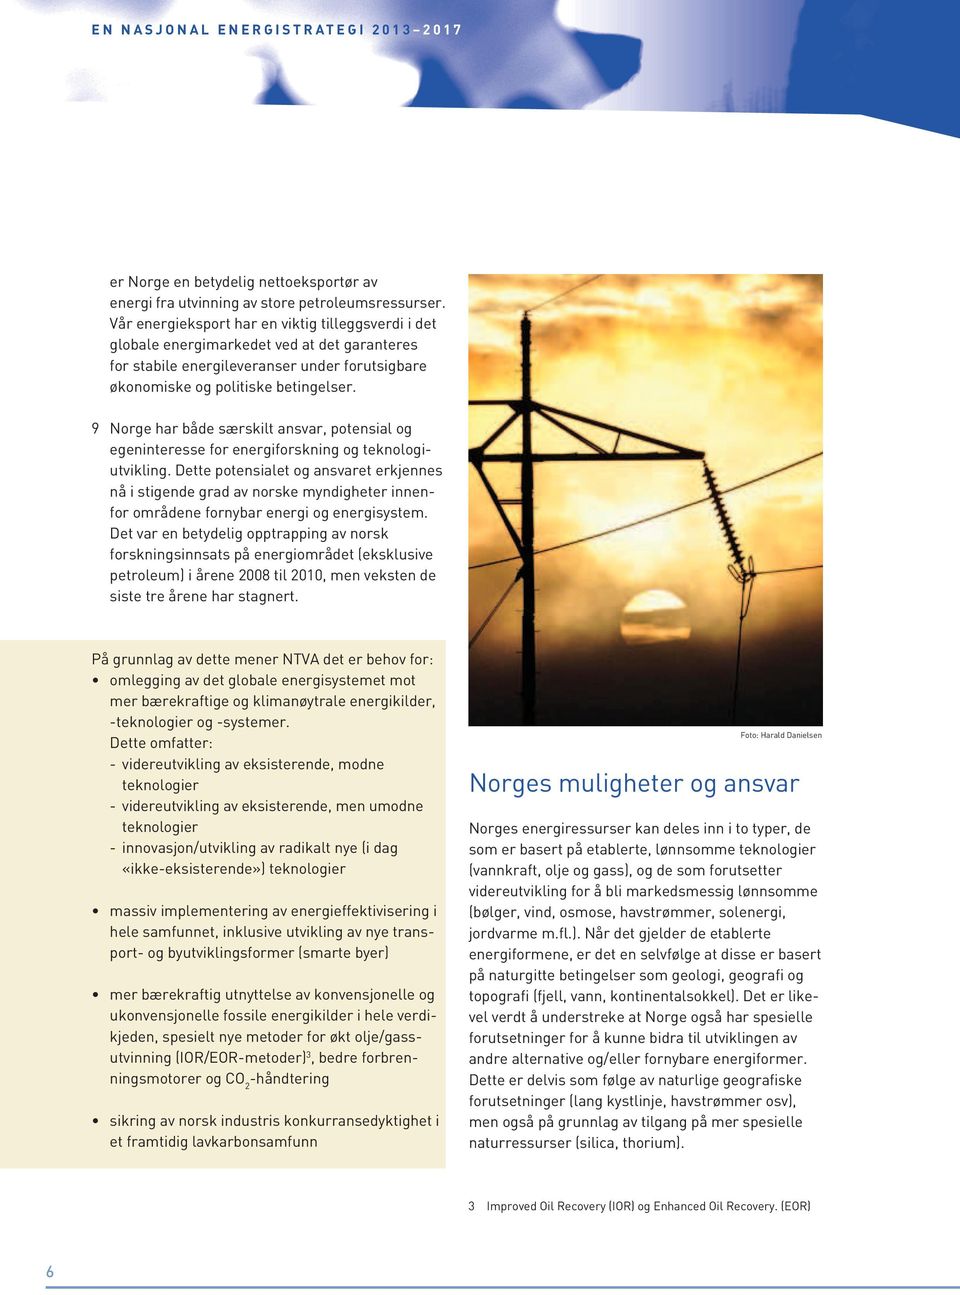 9 Norge har både særskilt ansvar, potensial og egeninteresse for energiforskning og tekno logiutvikling.